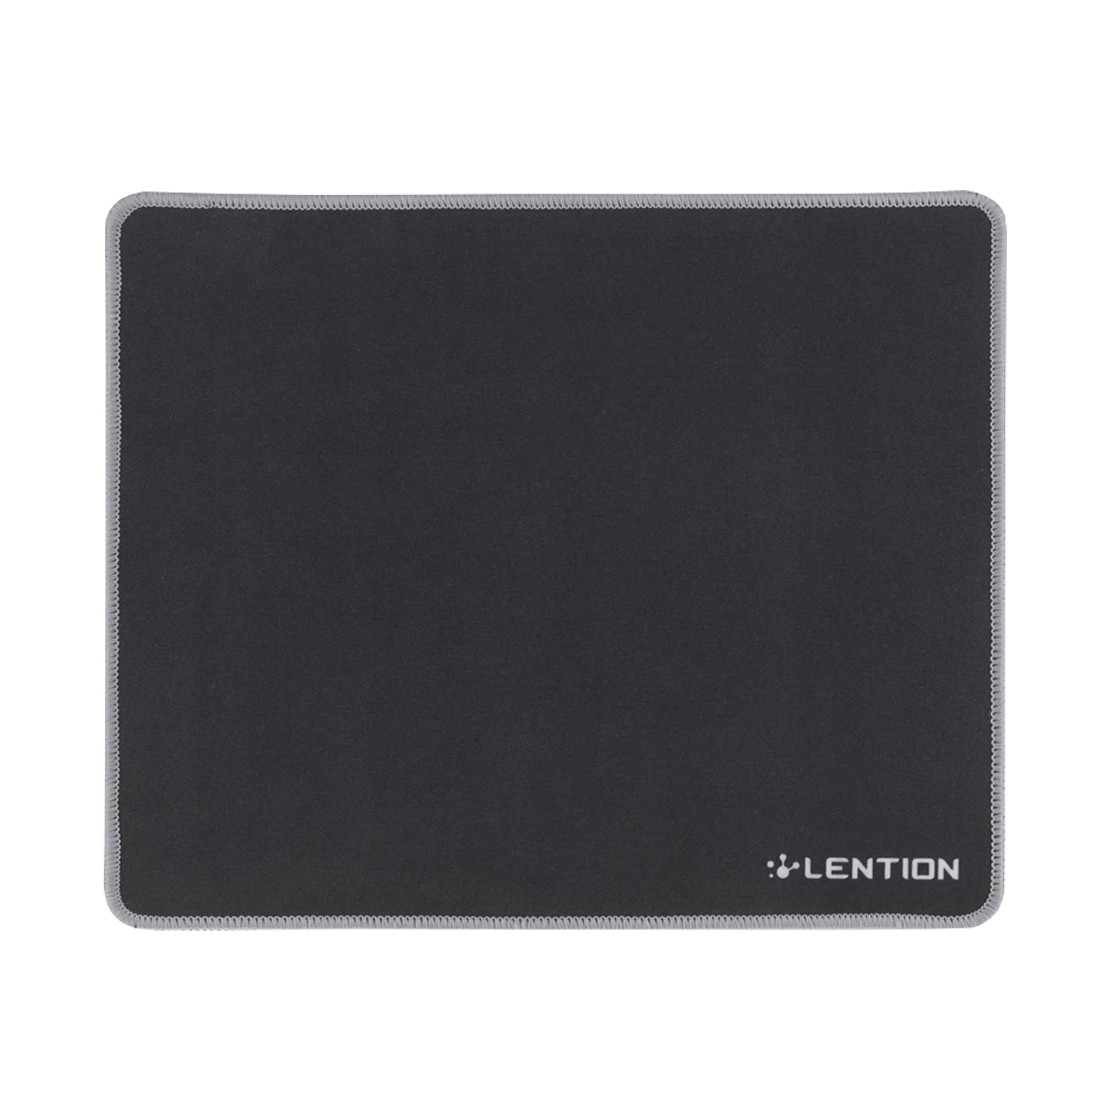 Lention Mouse Pad Stitched Edge SP-DS9